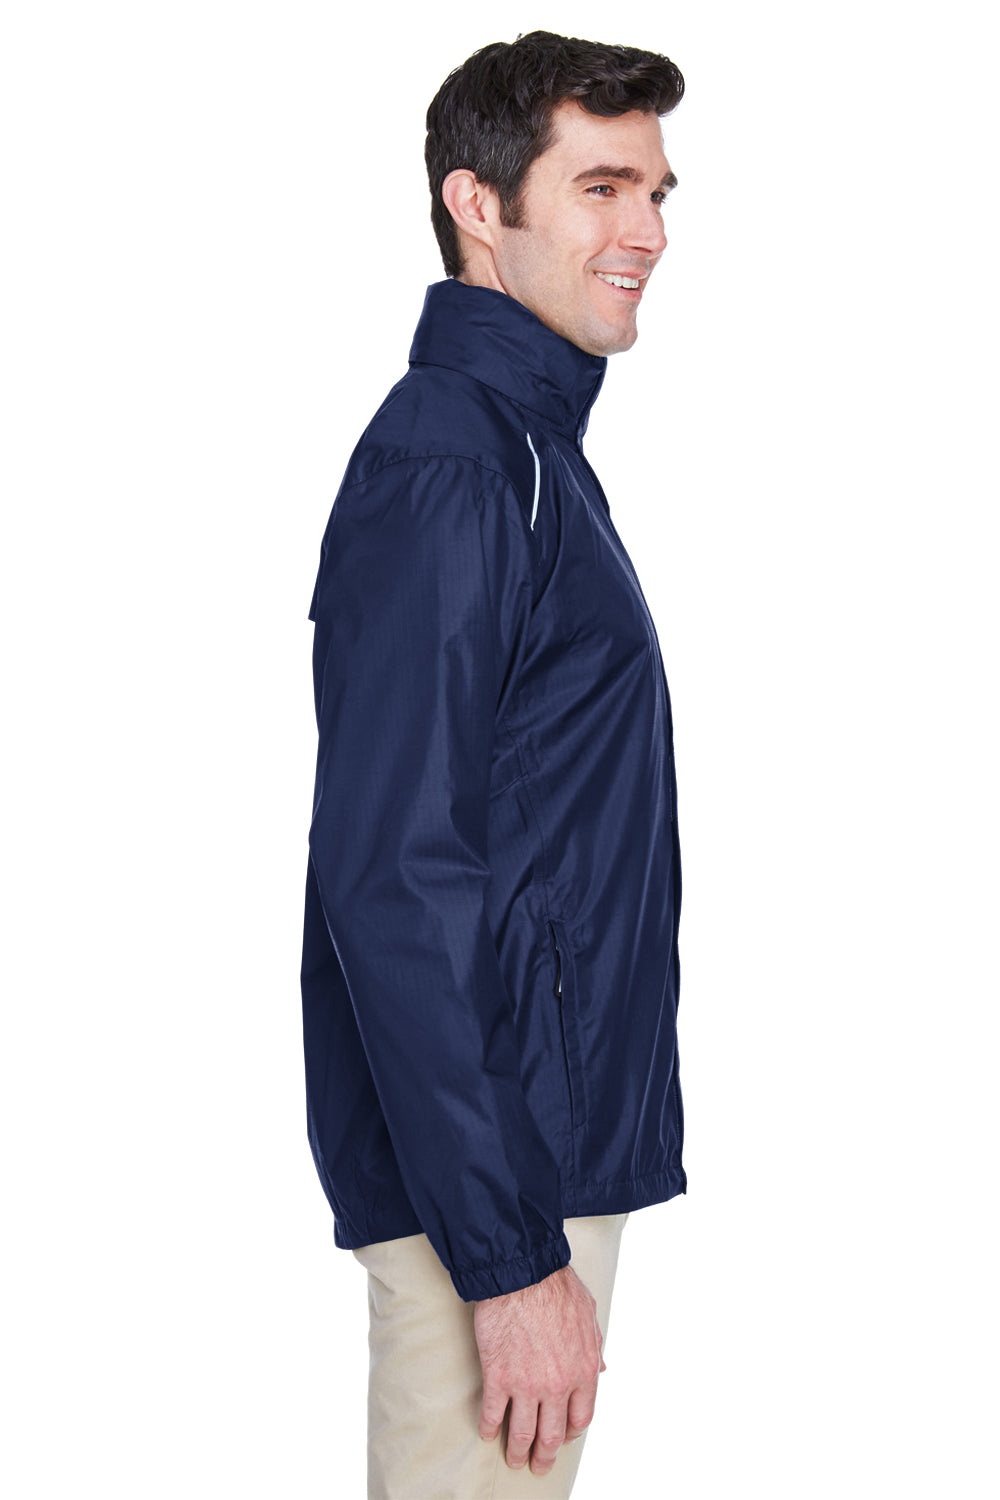 Core 365 88185 Mens Climate Waterproof Full Zip Hooded Jacket Navy Blue Side